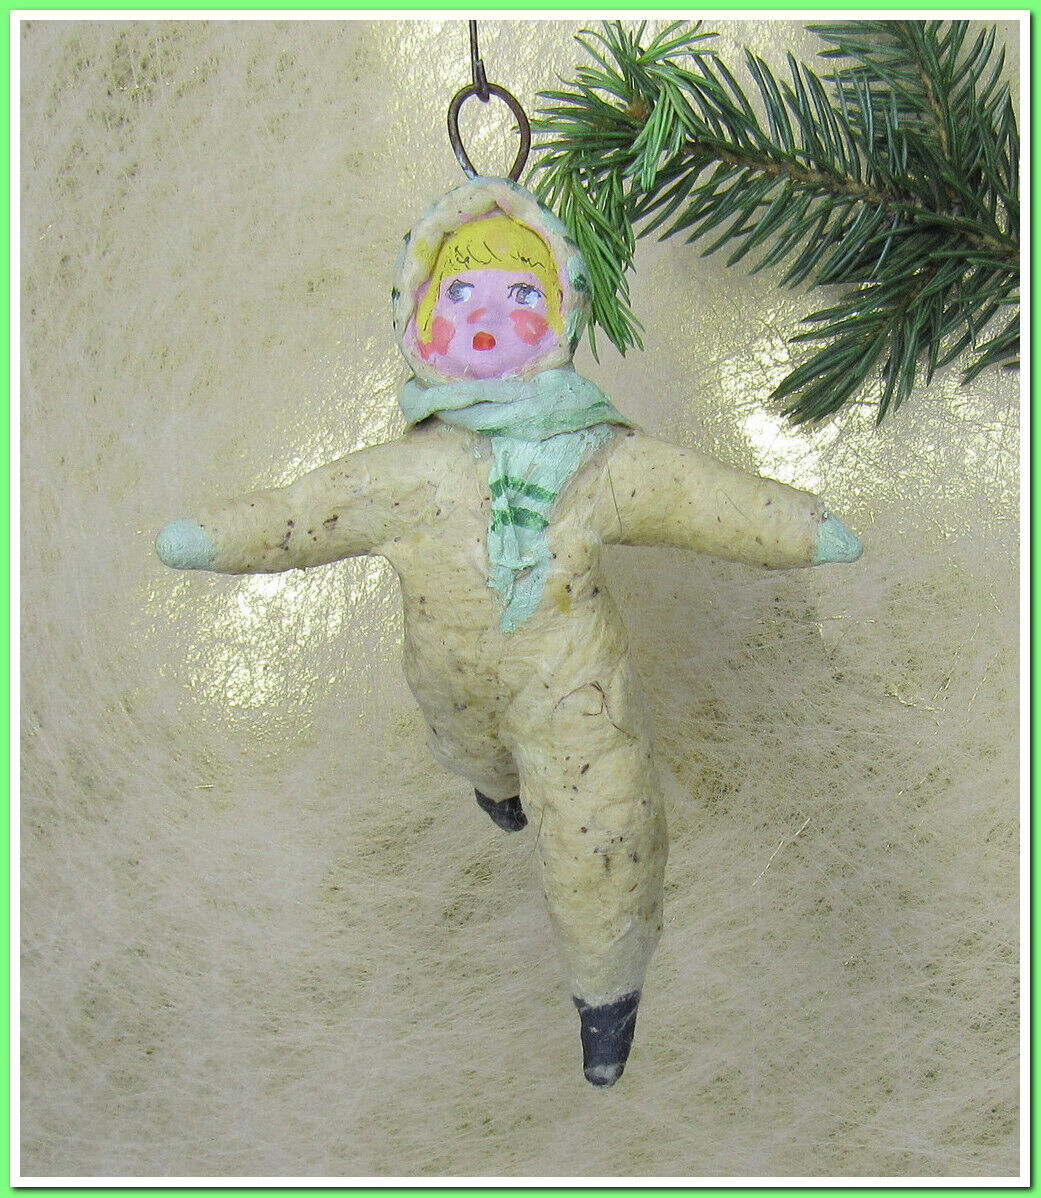 🎄Vintage antique Christmas spun cotton ornament figure #85246